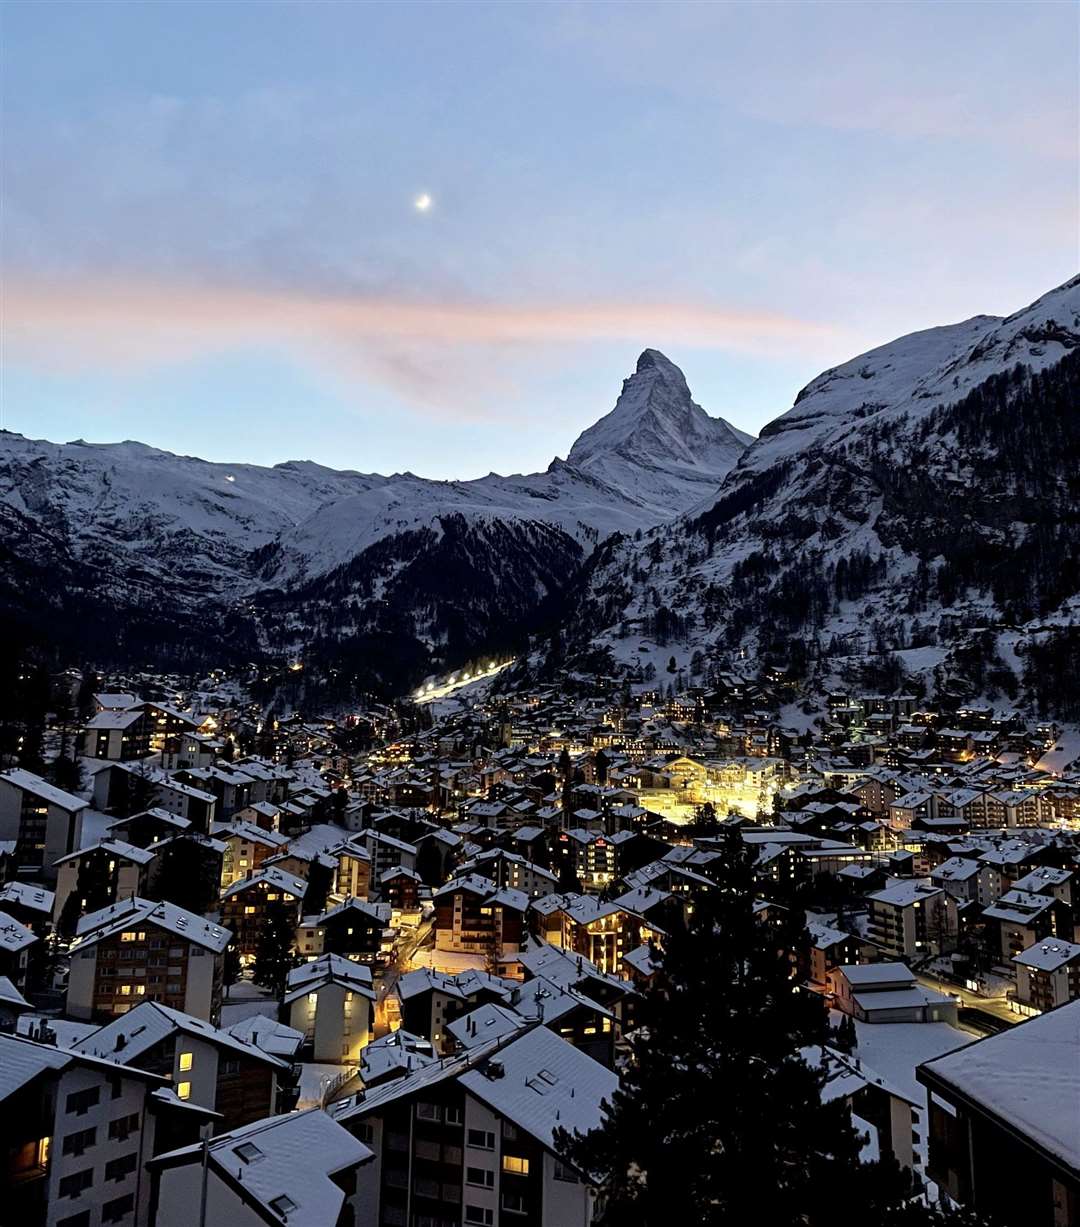 Lauren's travels included Zermatt in Switzerland Picture: SWNS.